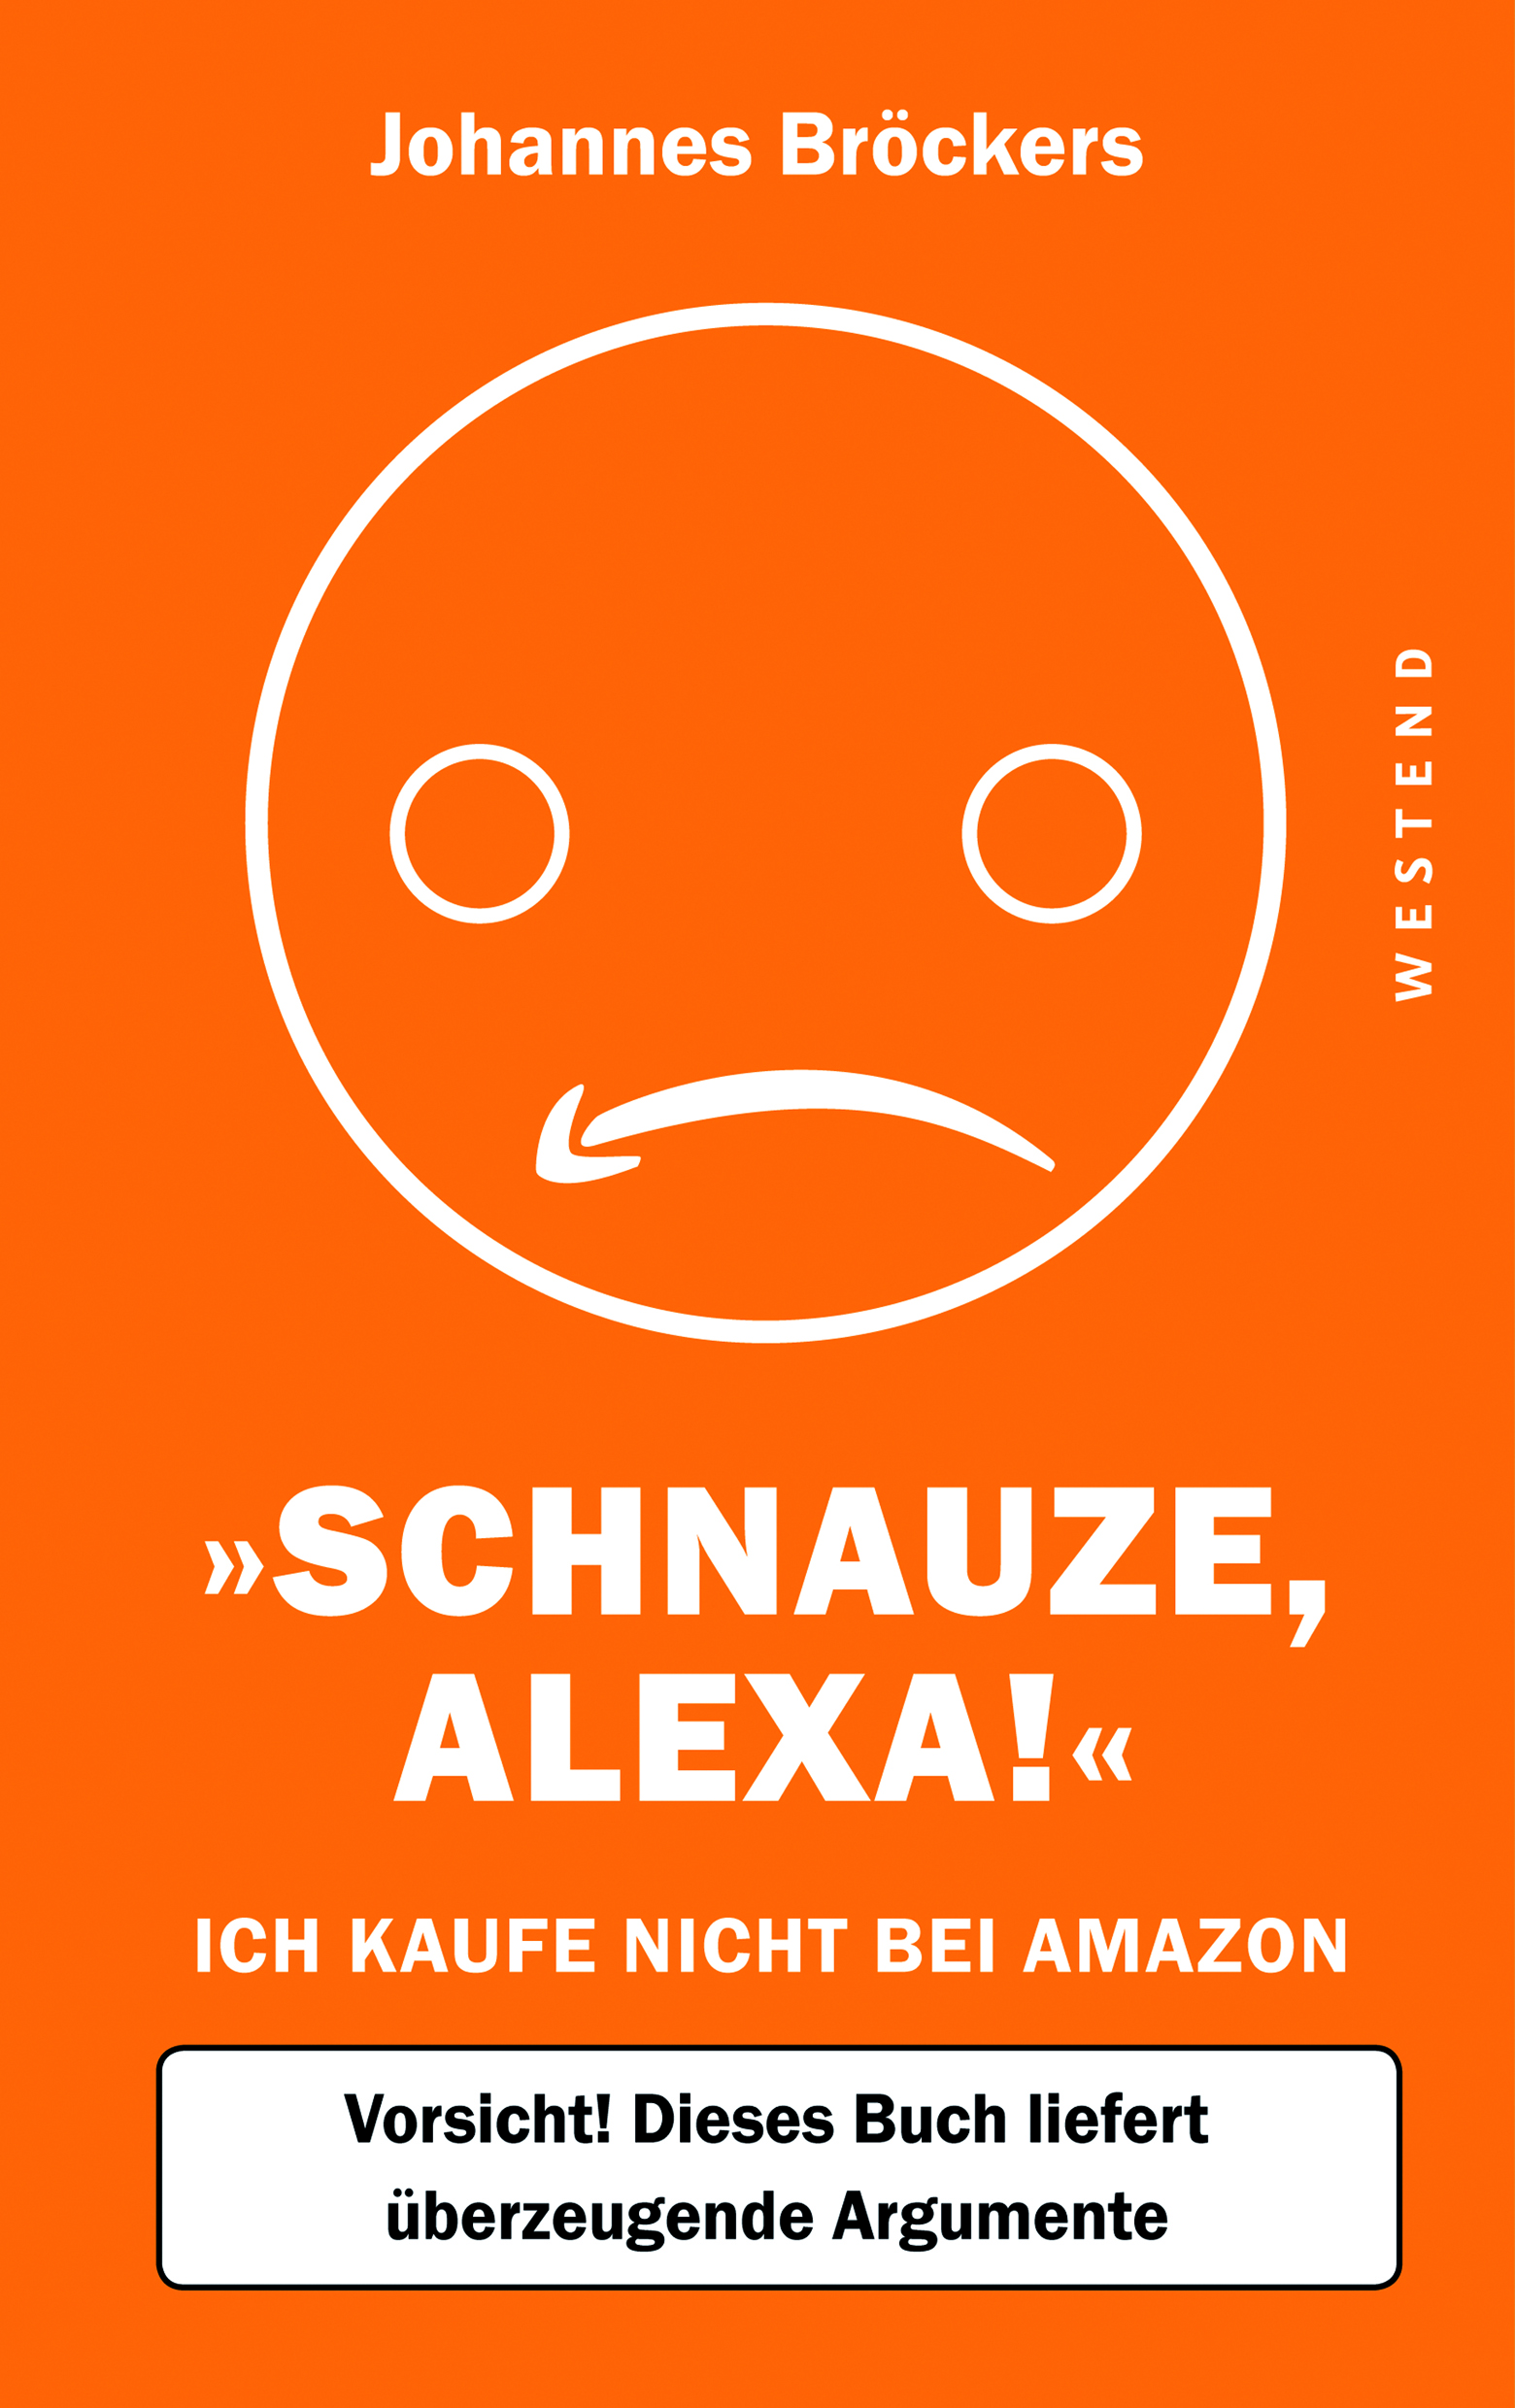 Bröckers-SchnauzeAlexa-Amazon-CMYK300